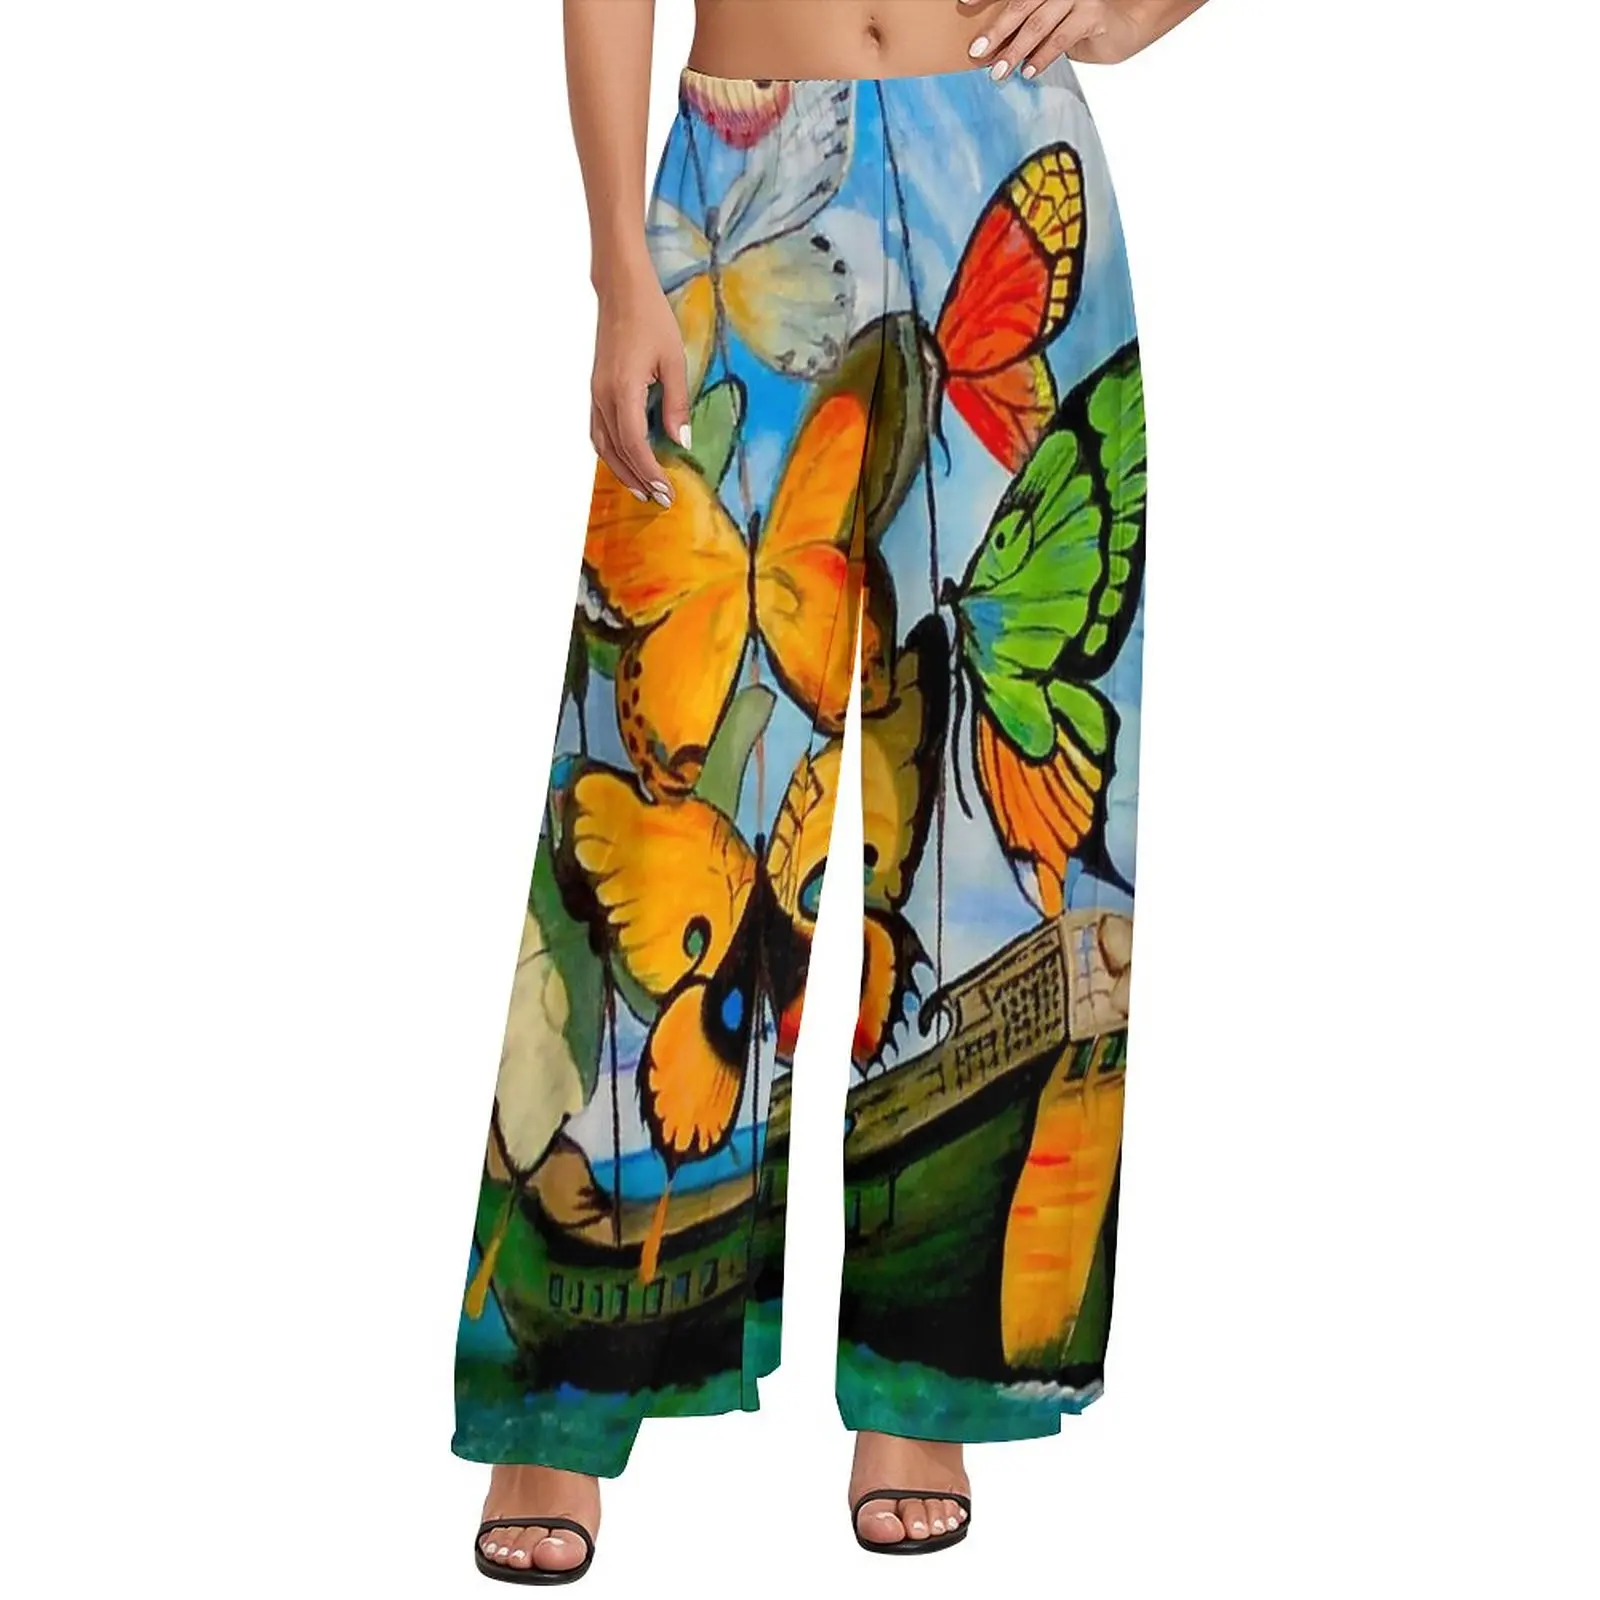 

Брюки женские с принтом бабочки и кораблем, классические Широкие штаны с абстрактным принтом, уличная одежда большого размера, прямые штаны на заказ